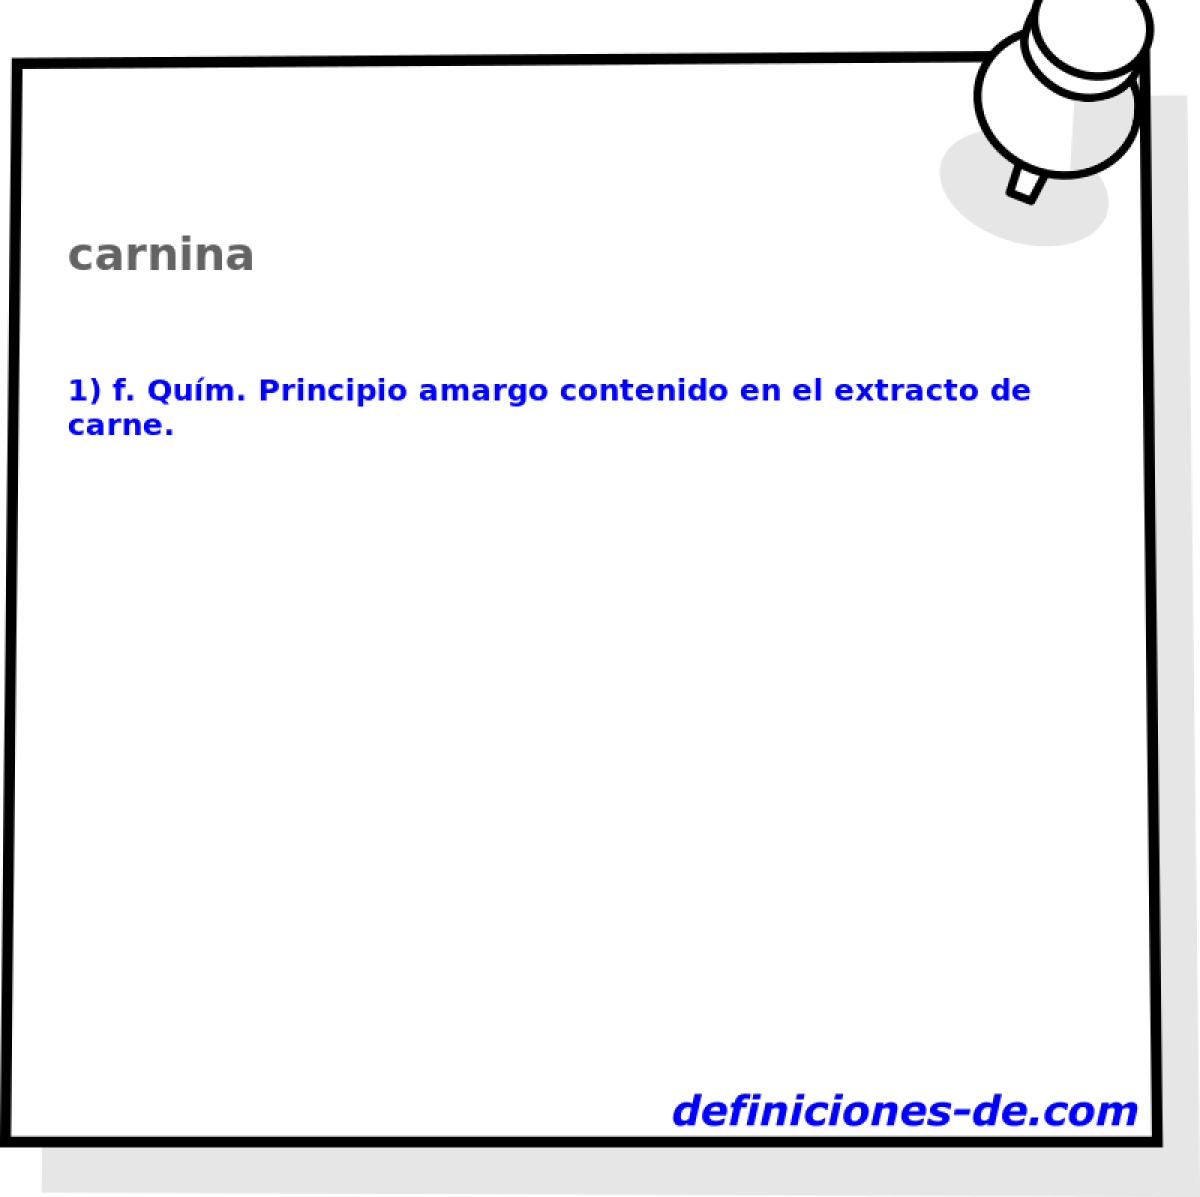 carnina 